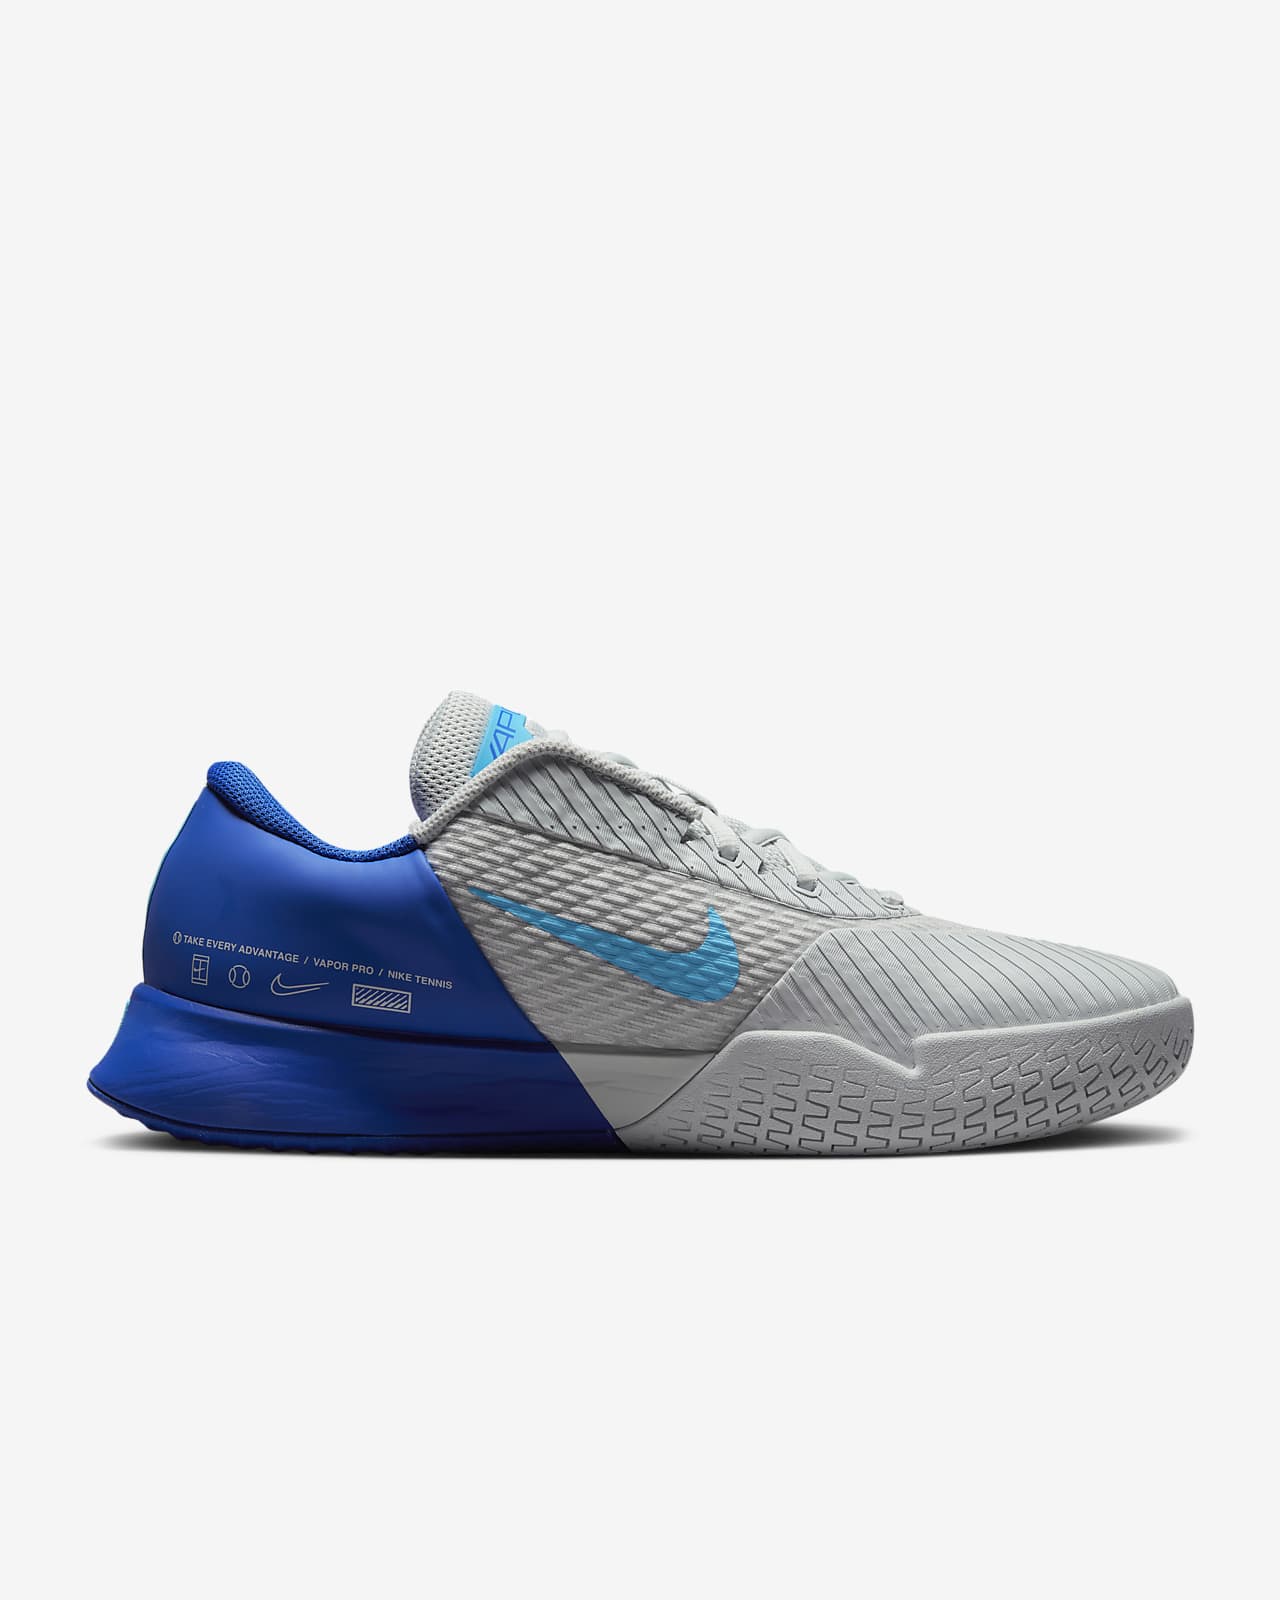 NikeCourt Air Zoom Vapor Pro 2 Men's Hard Court Tennis Shoes